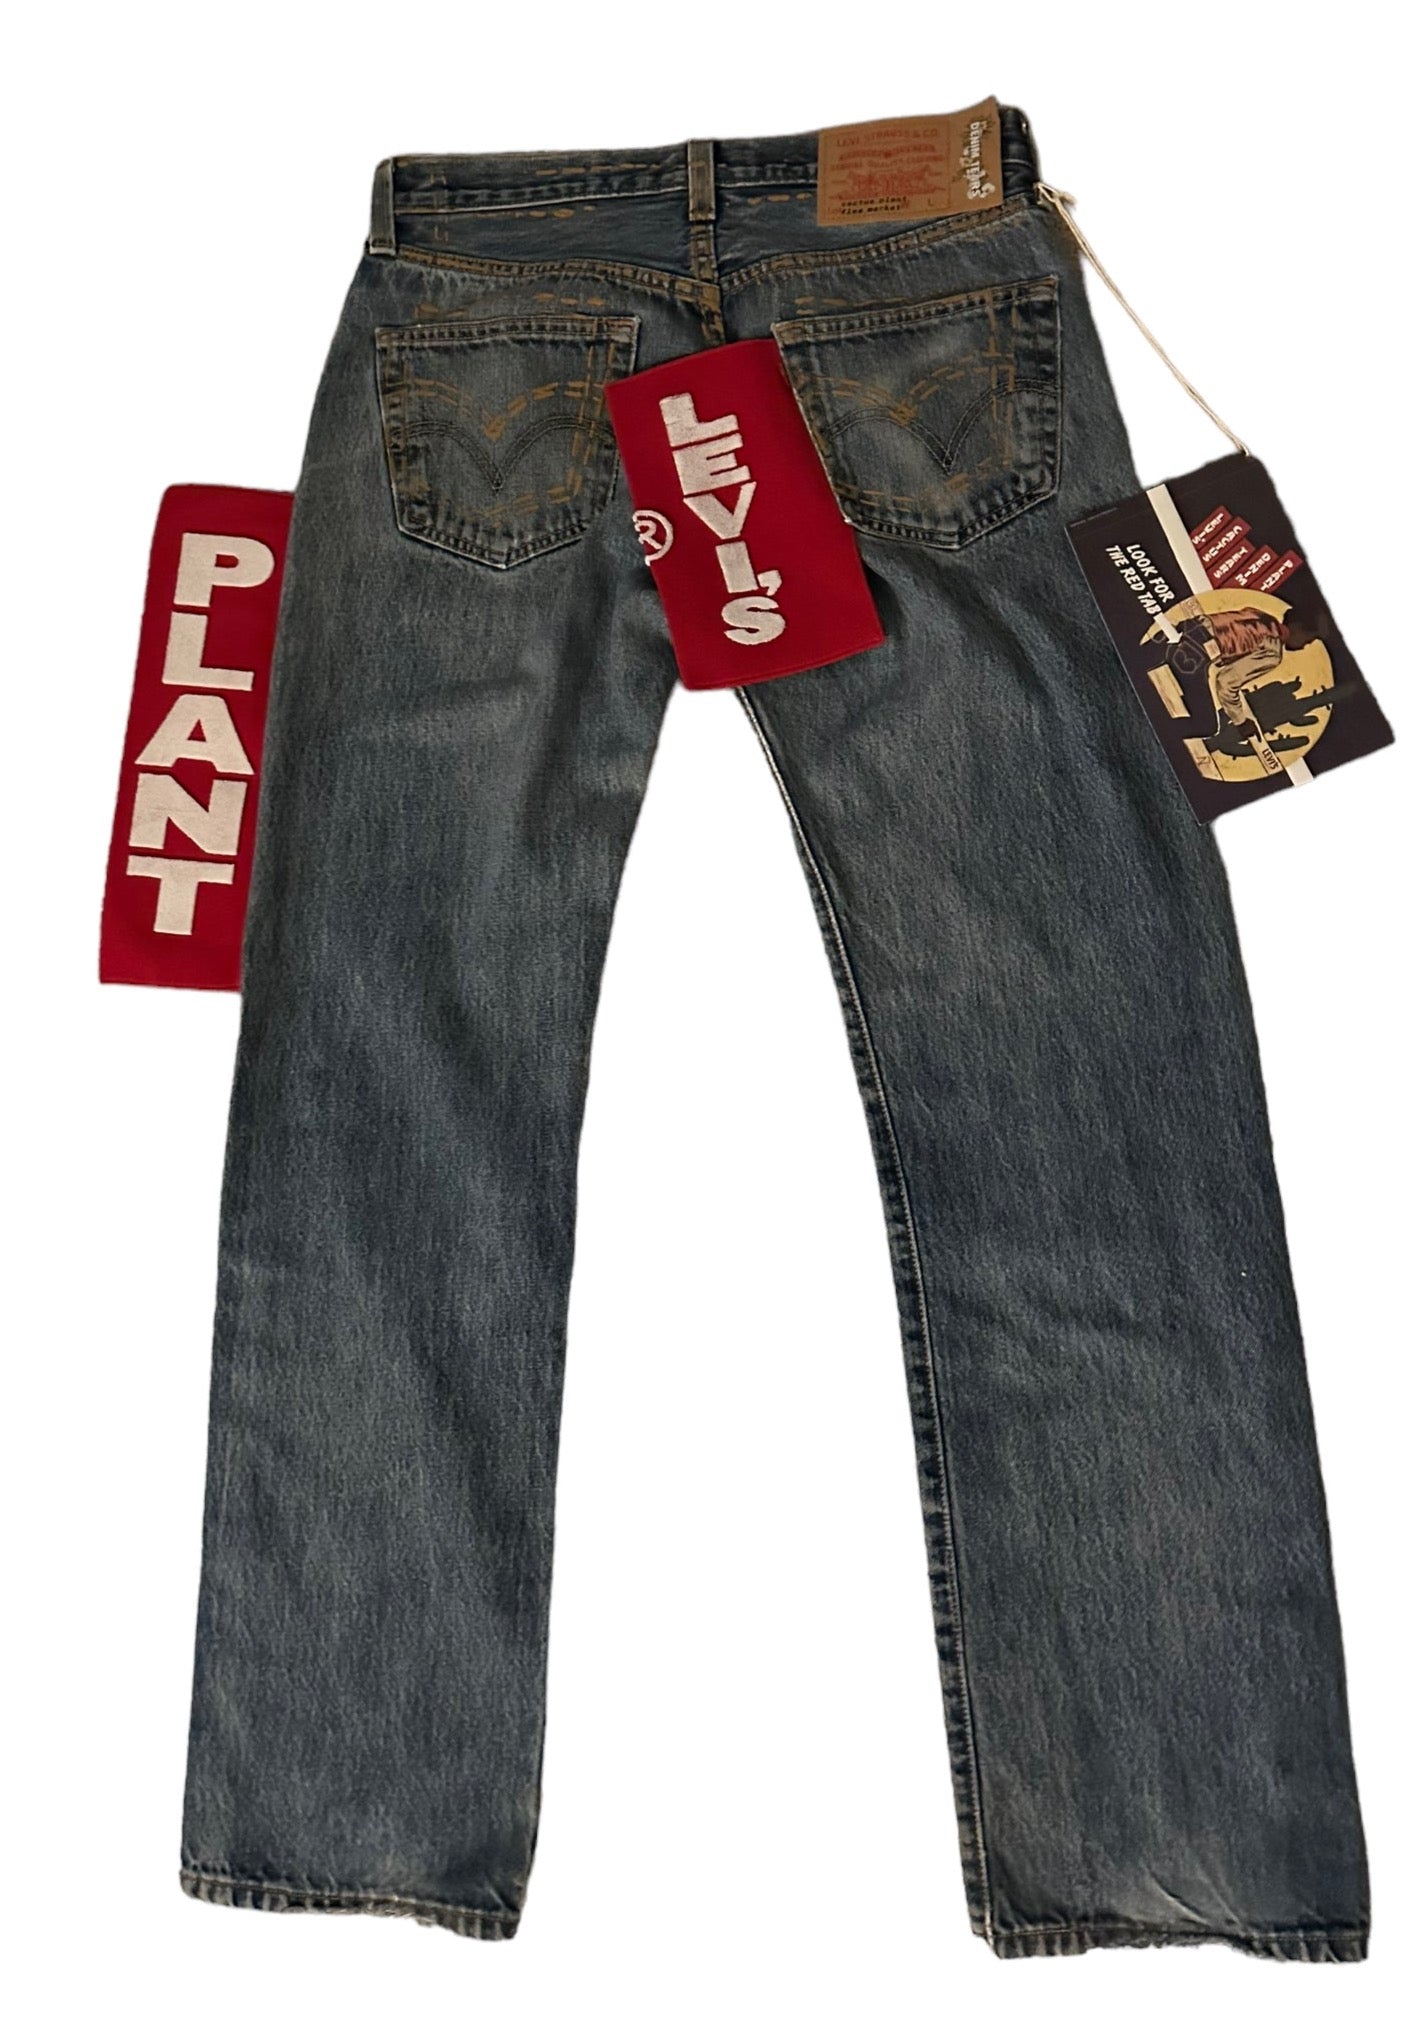 Denim Tears x Levi's x CPFM Denim Jeans Medium Wash - Supra Sneakers